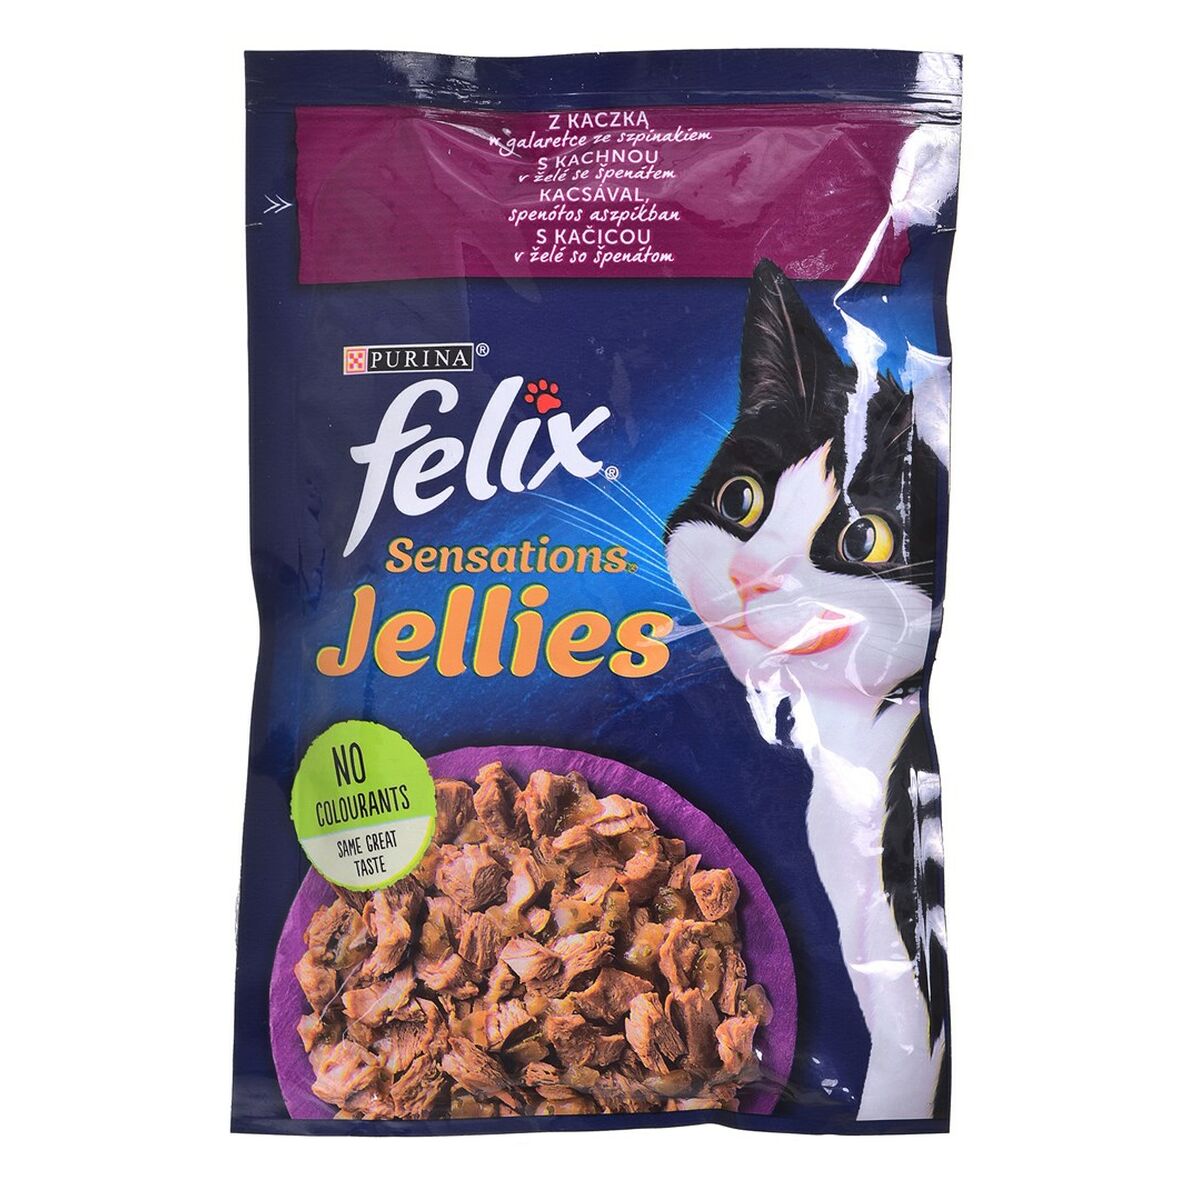 Aliments pour chat Purina Felix Sensations